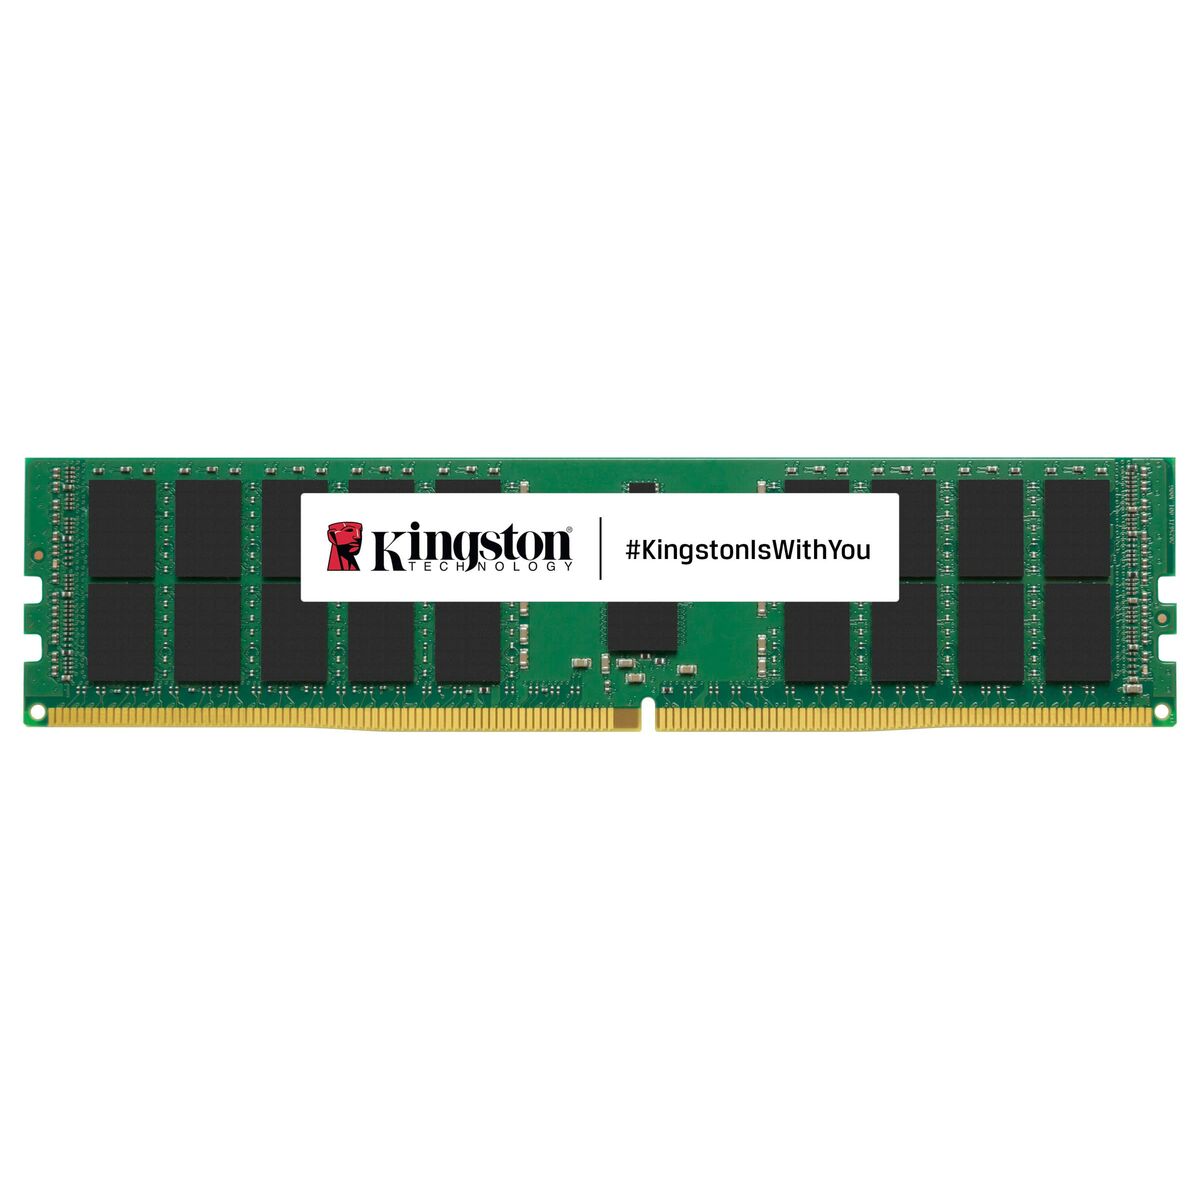 Osta tuote RAM-muisti Kingston KSM48R40BS8KMM-16HMR 16 GB DDR5 4800 MHz CL40 verkkokaupastamme Korhone: Tietokoneet & Elektroniikka 10% alennuksella koodilla KORHONE